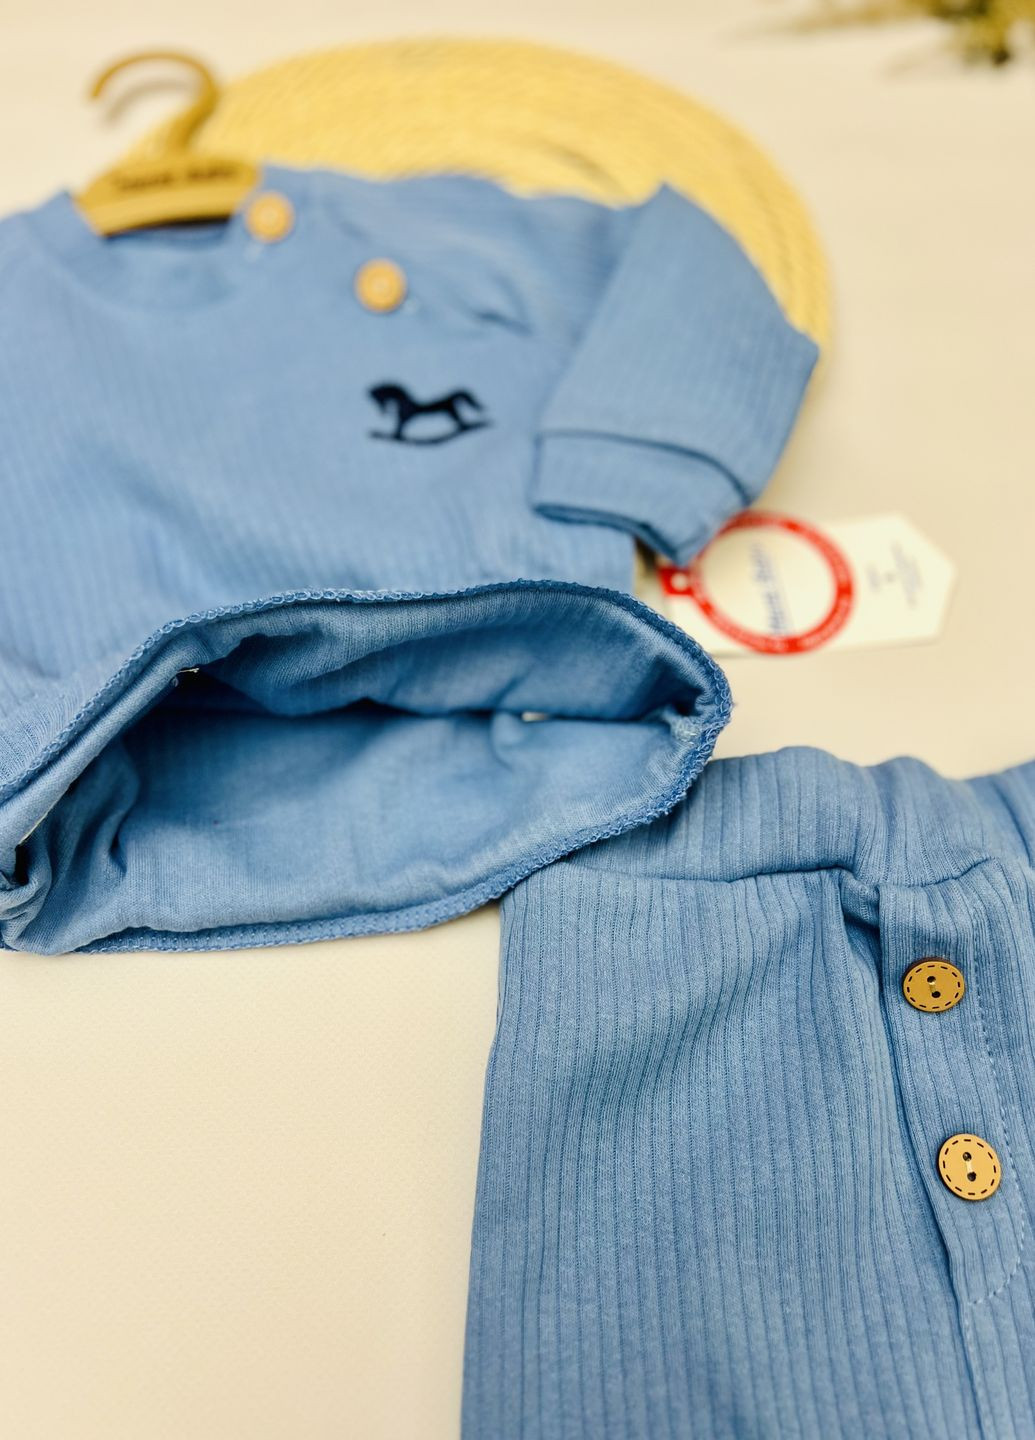 Синій демісезонний костюм для малюків з вишивкою "коник" Murat baby